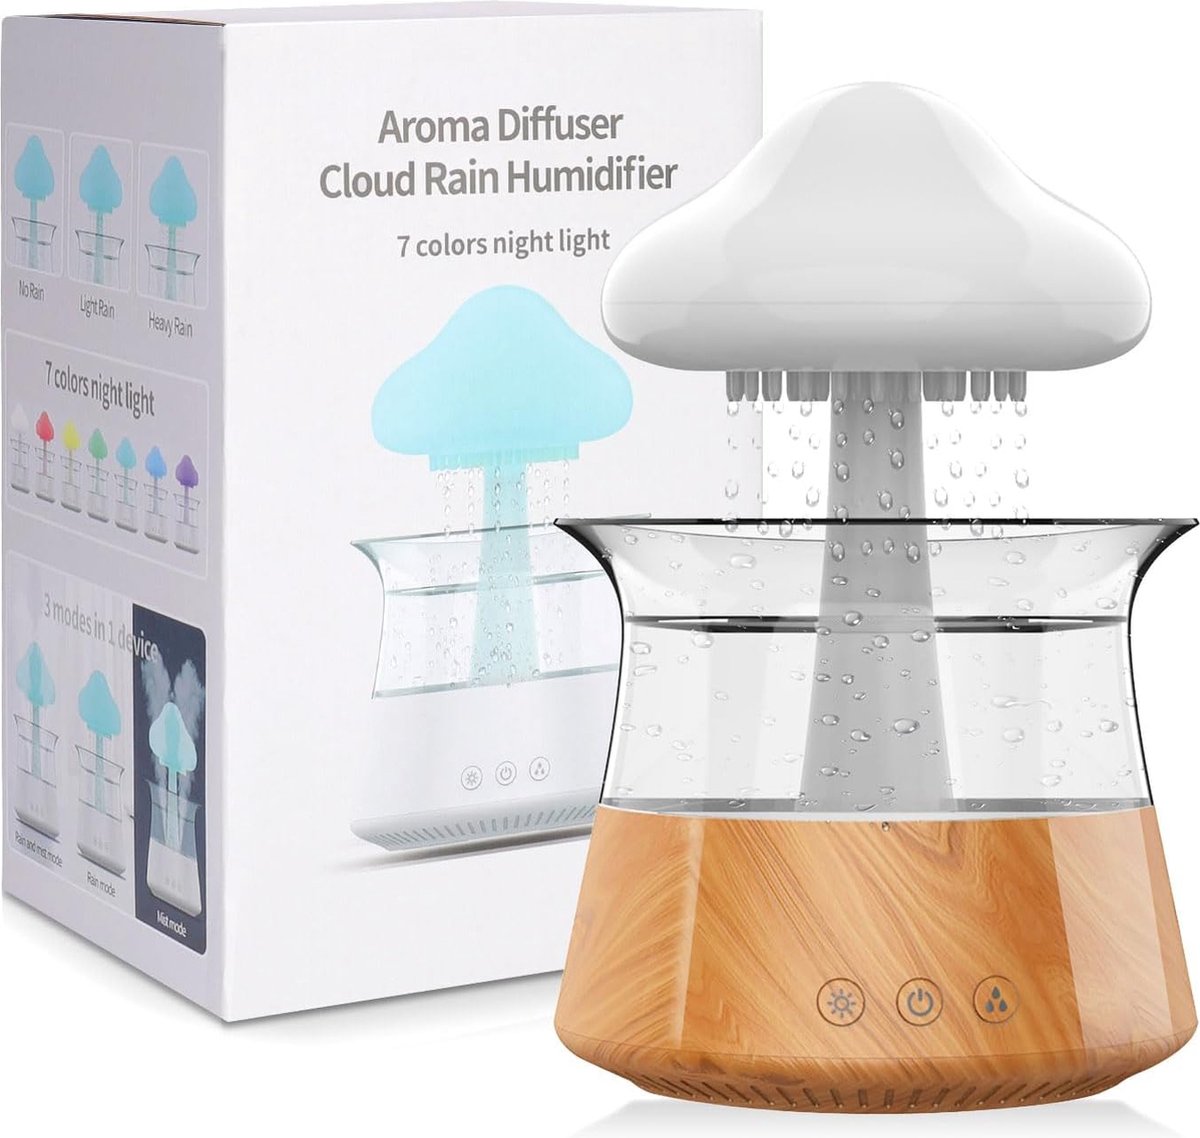 Aroma Diffuser Rain Cloud Humidifier - Regenwolk Luchtbevochtiger - Regendruppel -Aroma Diffuser - Sfeervol licht - zachte verlichting - energiezuinig - stijlvol ontwerp - Ontspan - Olie verstuiver - Aroma